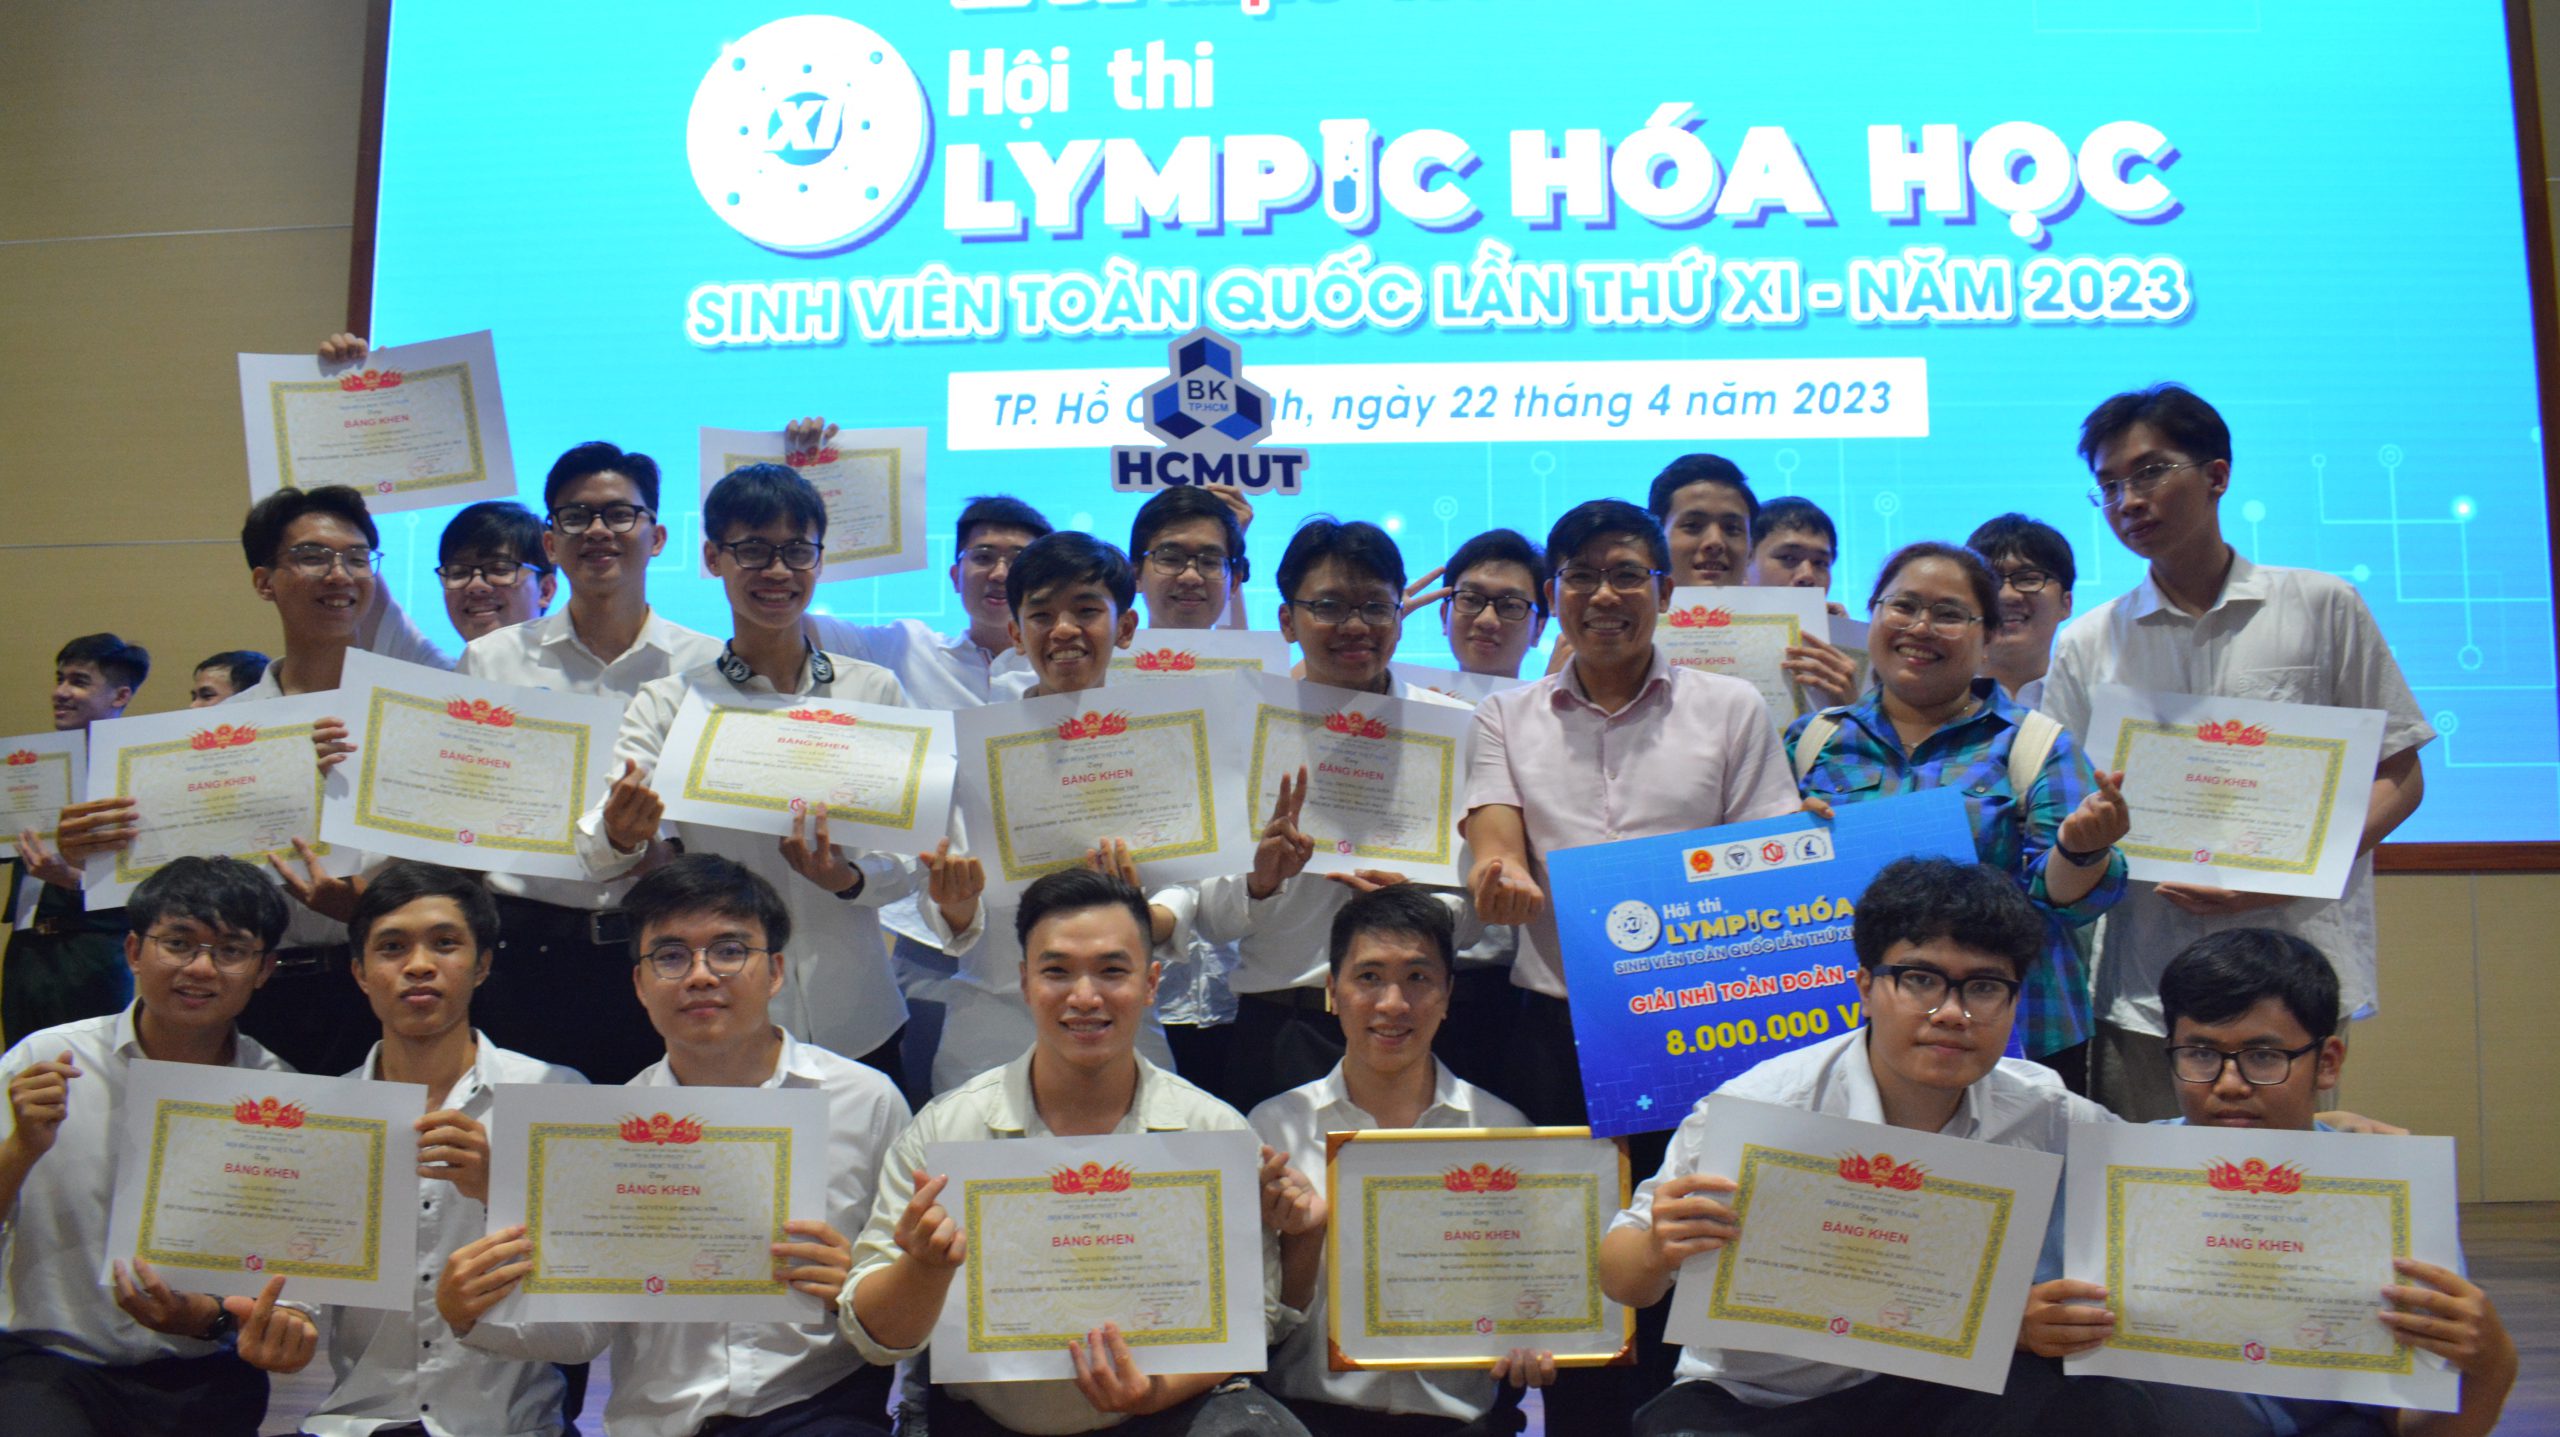 Đoàn dự thi nhận giải thưởng tại Olympic Hóa học lần XI